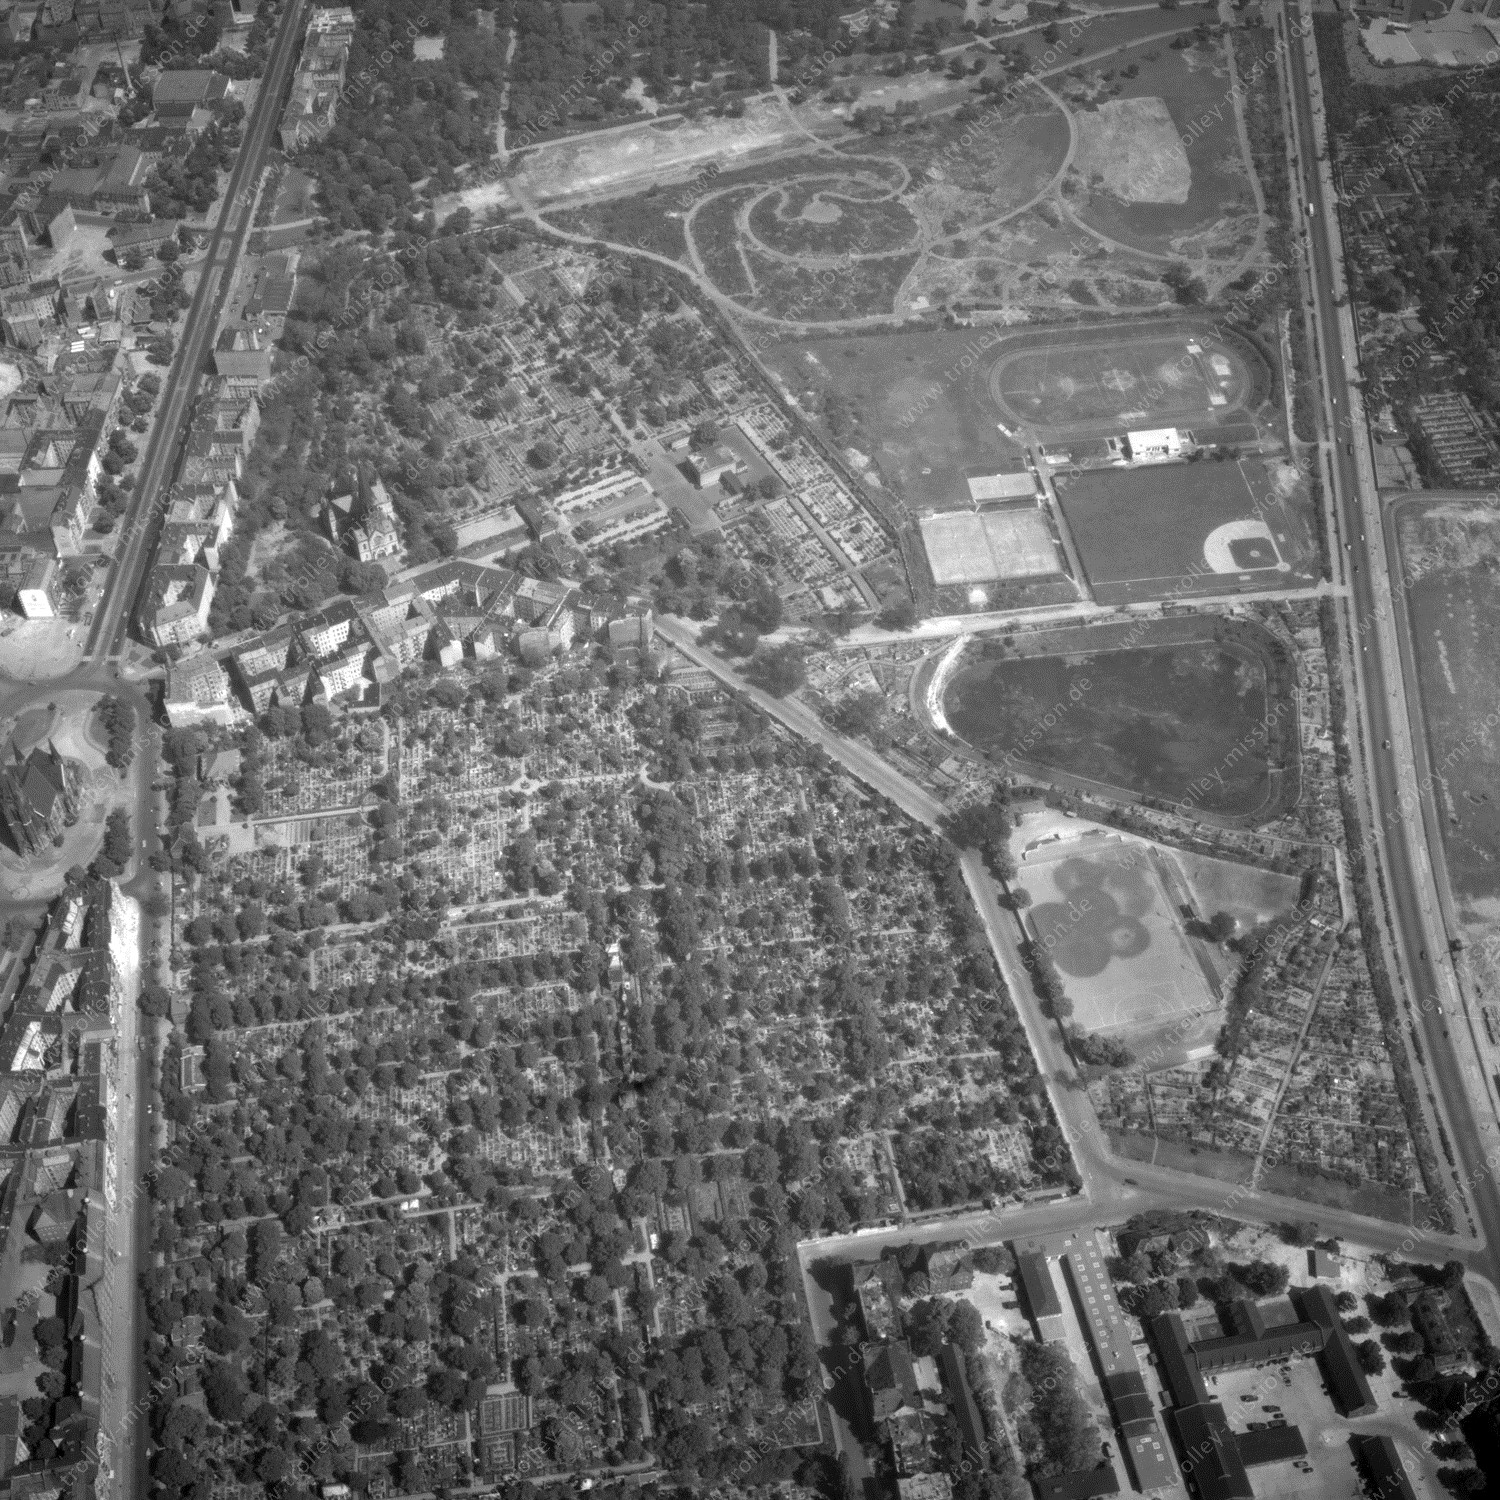 Alte Fotos und Luftbilder von Berlin - Luftbildaufnahme Nr. 01 - Historische Luftaufnahmen von West-Berlin aus dem Jahr 1954 - Flugstrecke Kilo